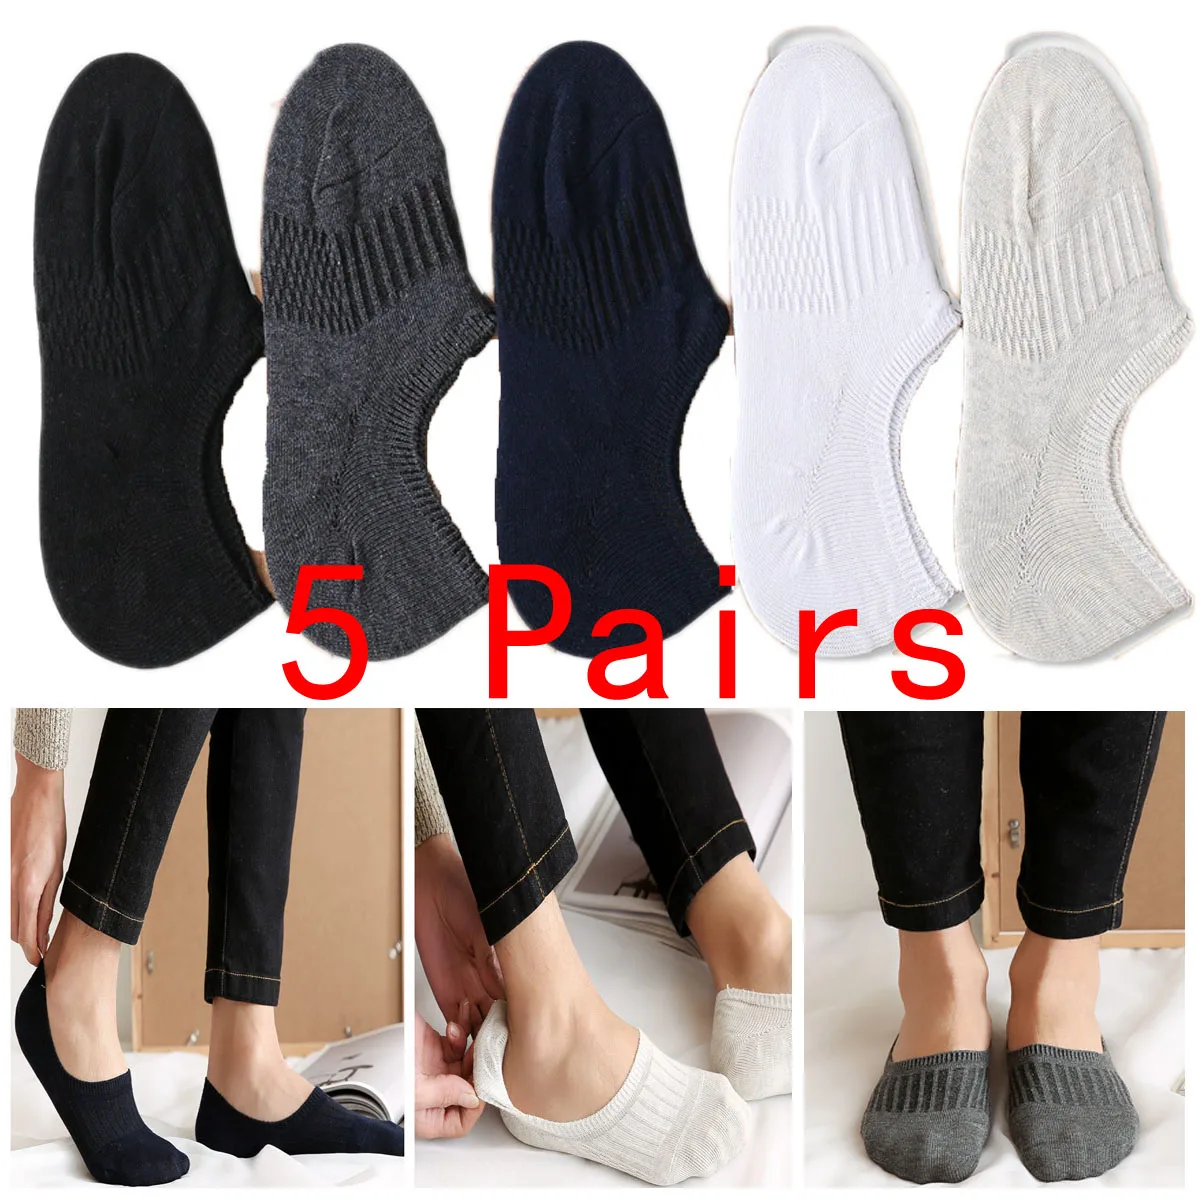 5 пар, мужские носки без показа, повседневные носки с низким вырезом, Нескользящие высококачественные носки, WATHX0006